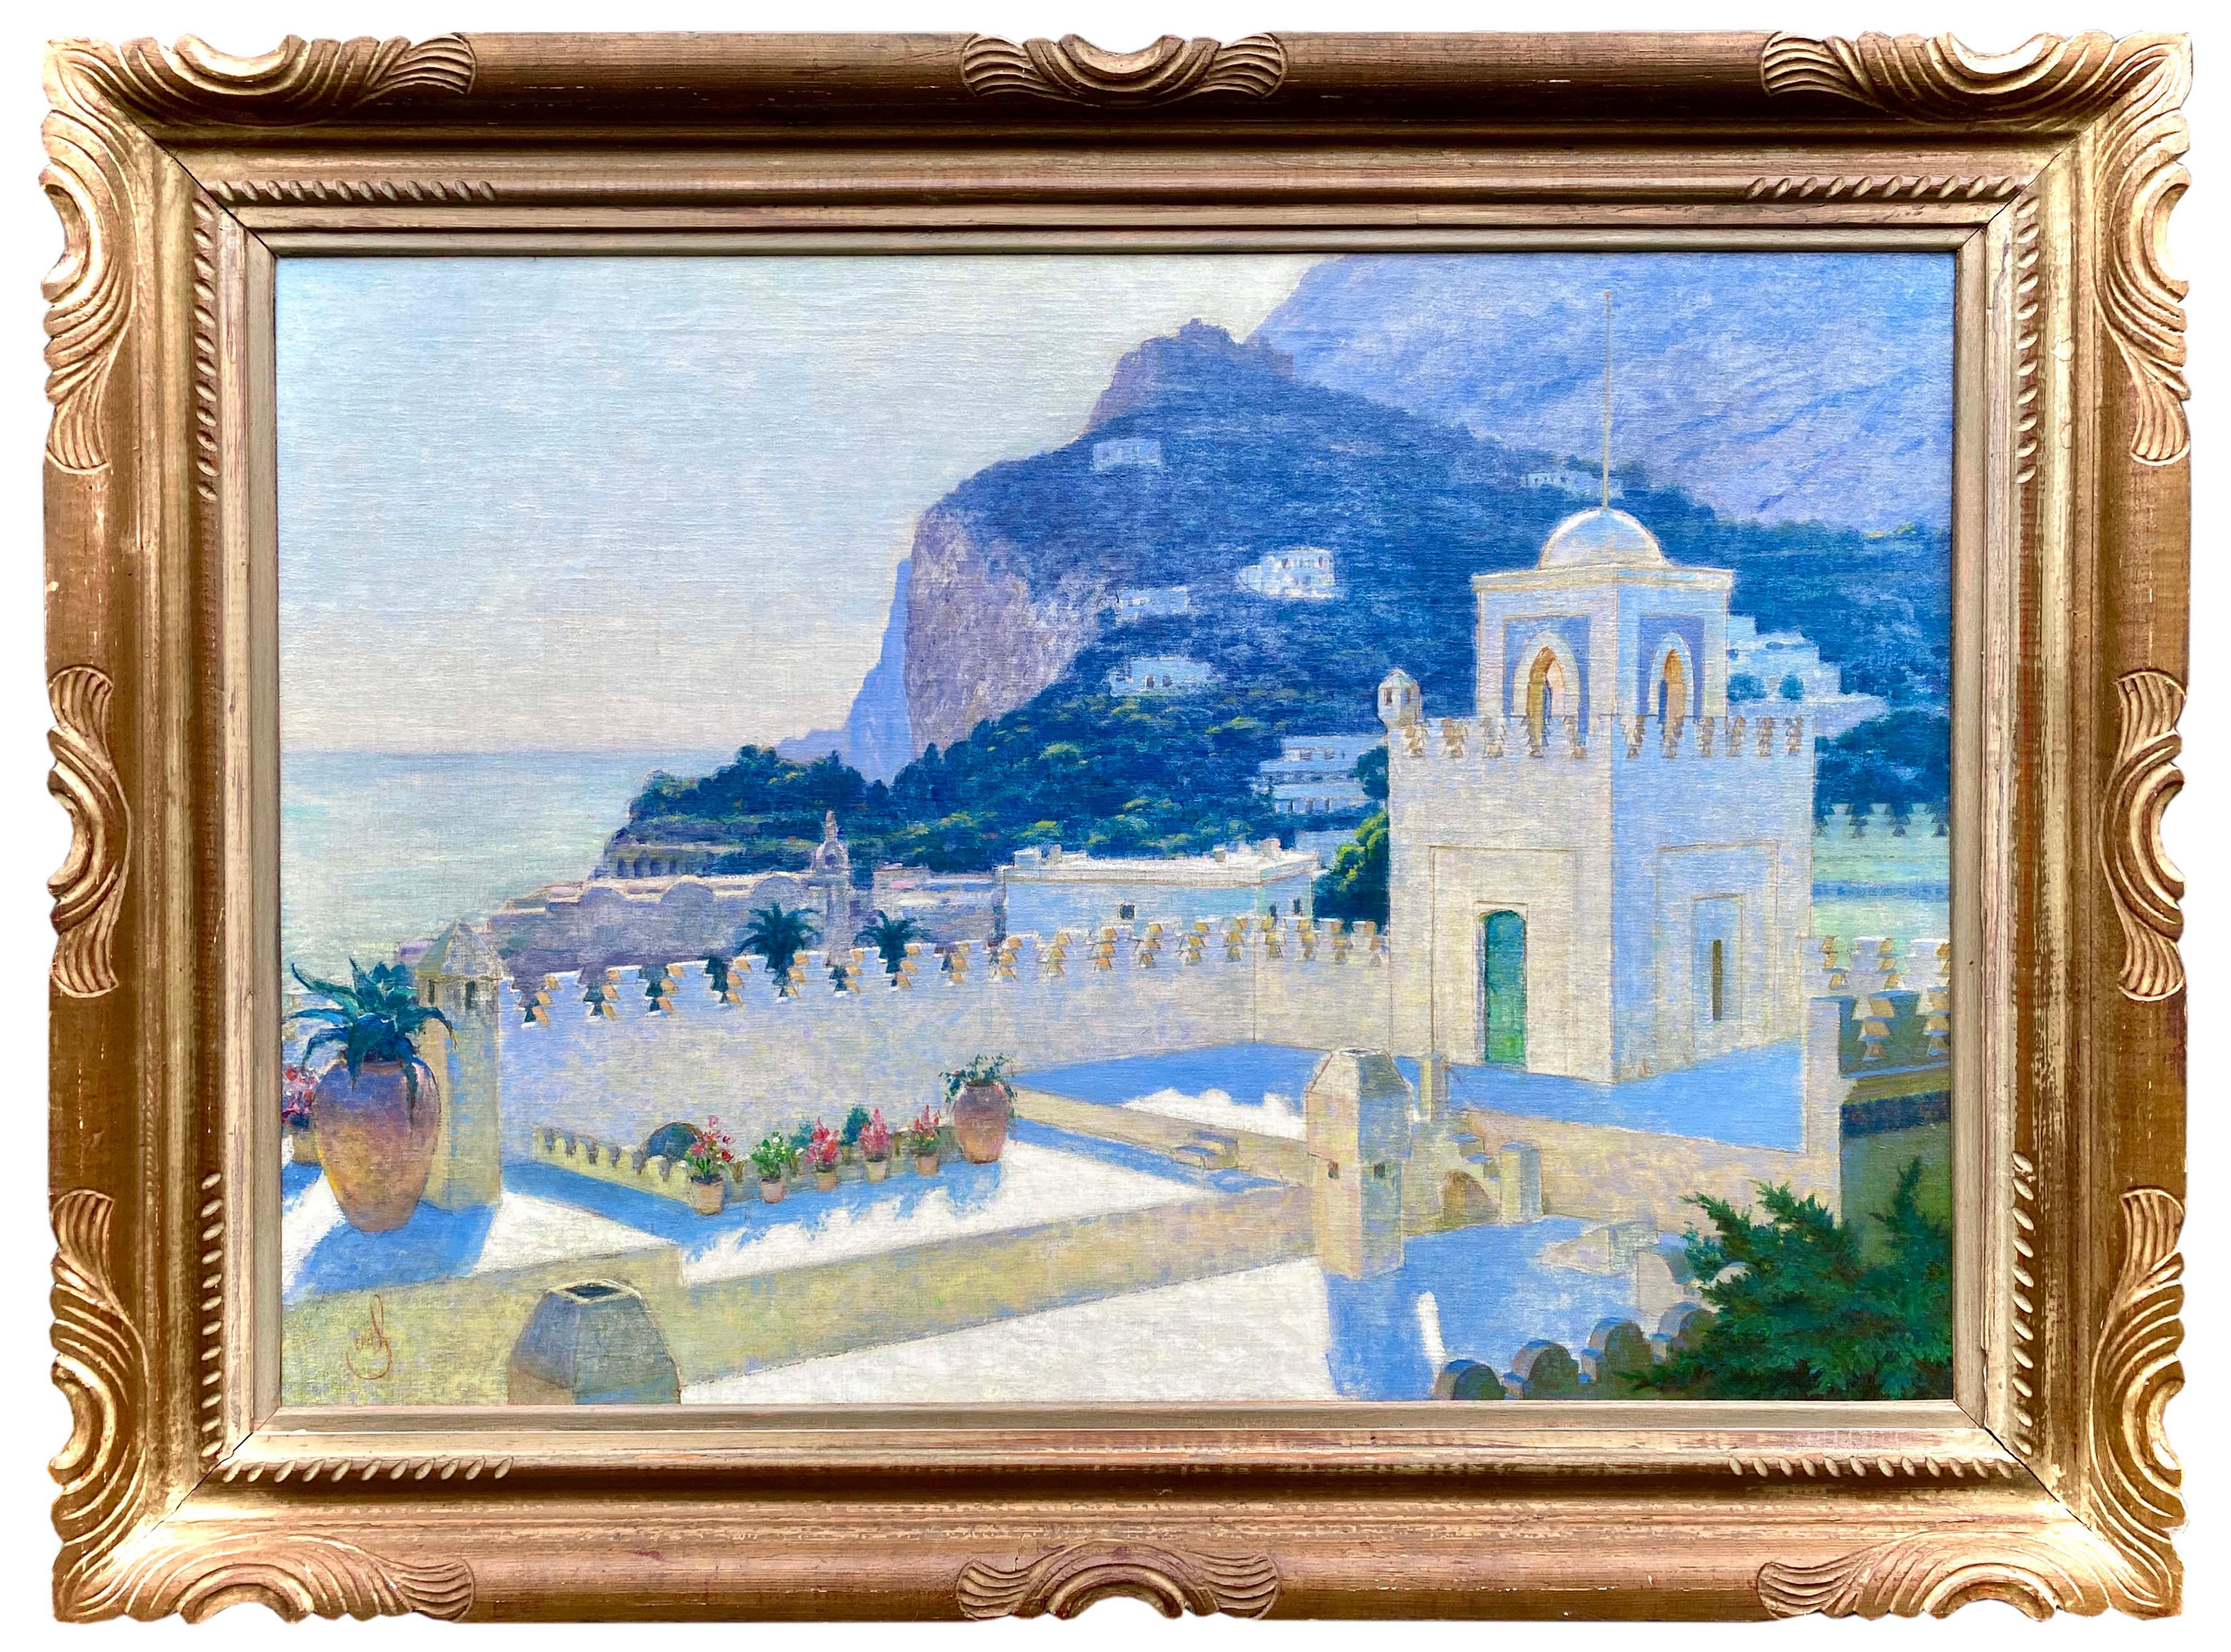 Landscape Painting Unknown - Vue de Villa Discopoli, Capri, artiste 19ème - 20ème siècle, signé par Monogram 